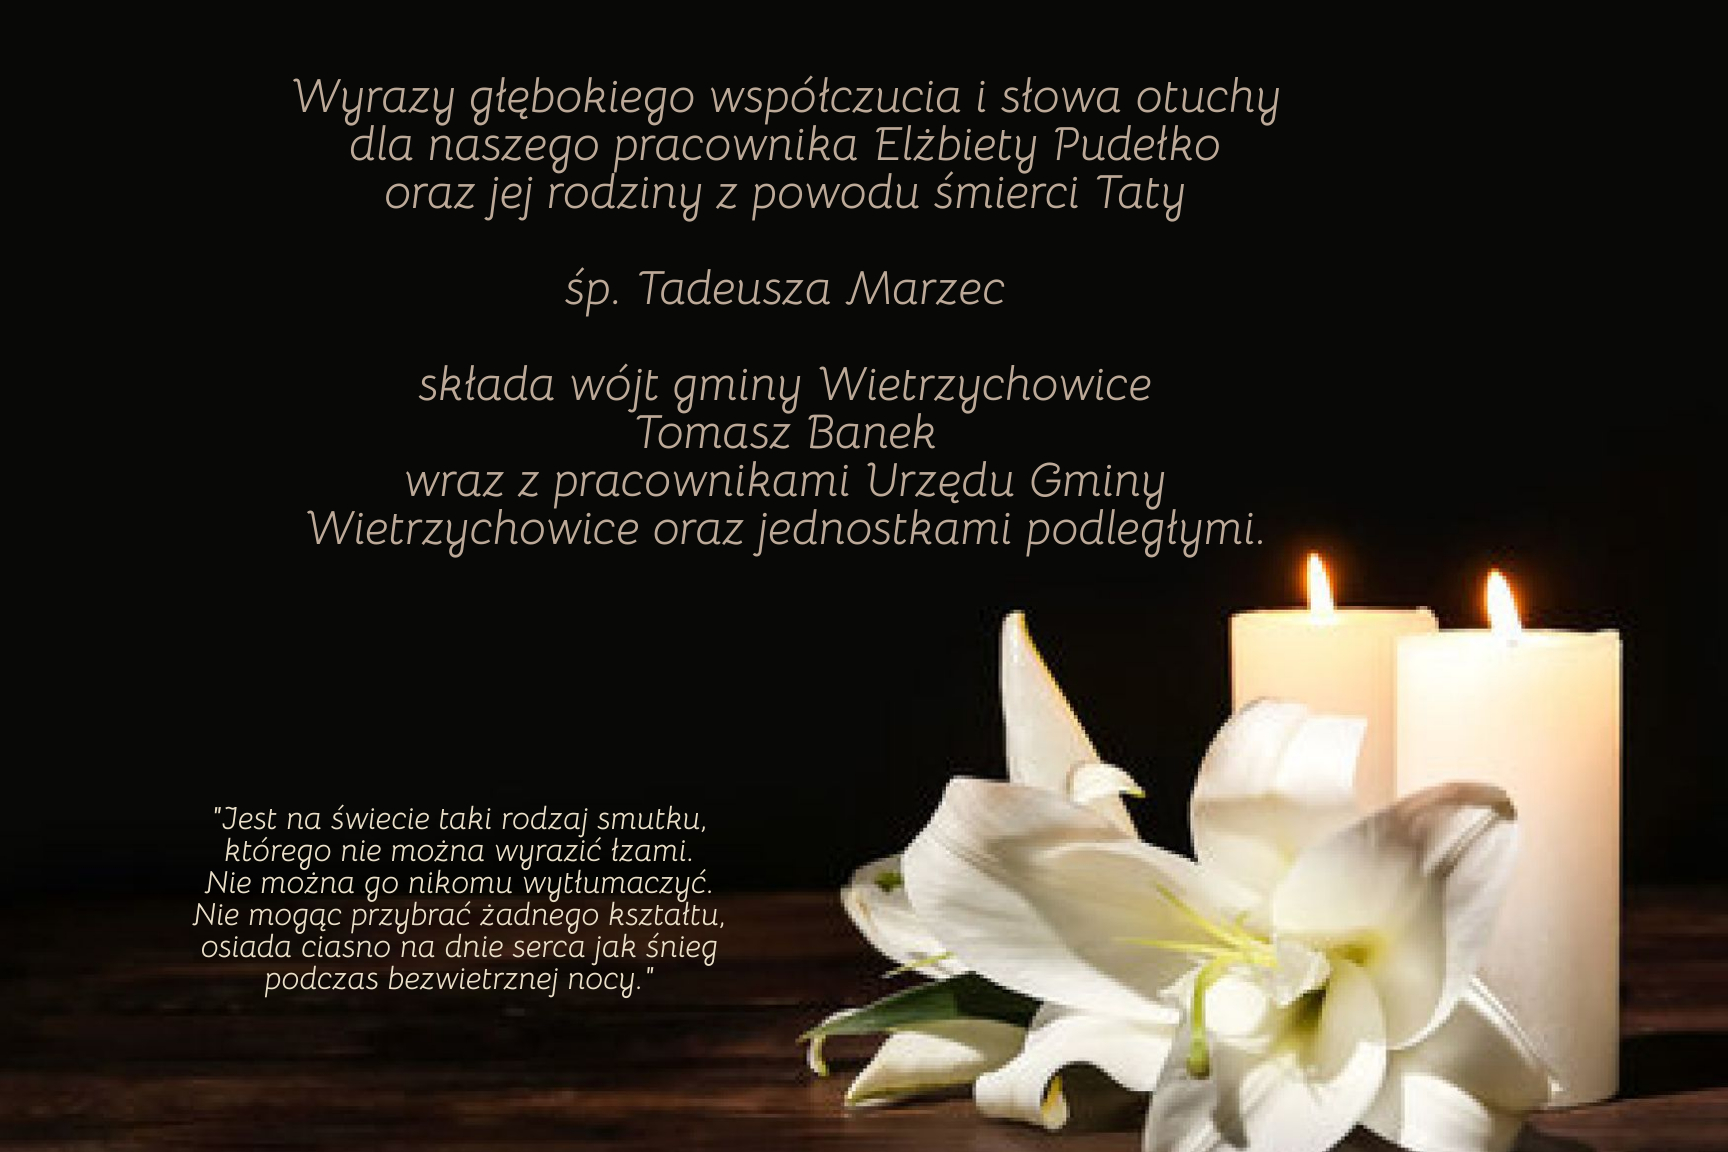 grafika przedstawia ciemne tło, z prawej strony znajduje się grafika świecy oraz białego kwiatka. Z lewej strony tekst kondolencji